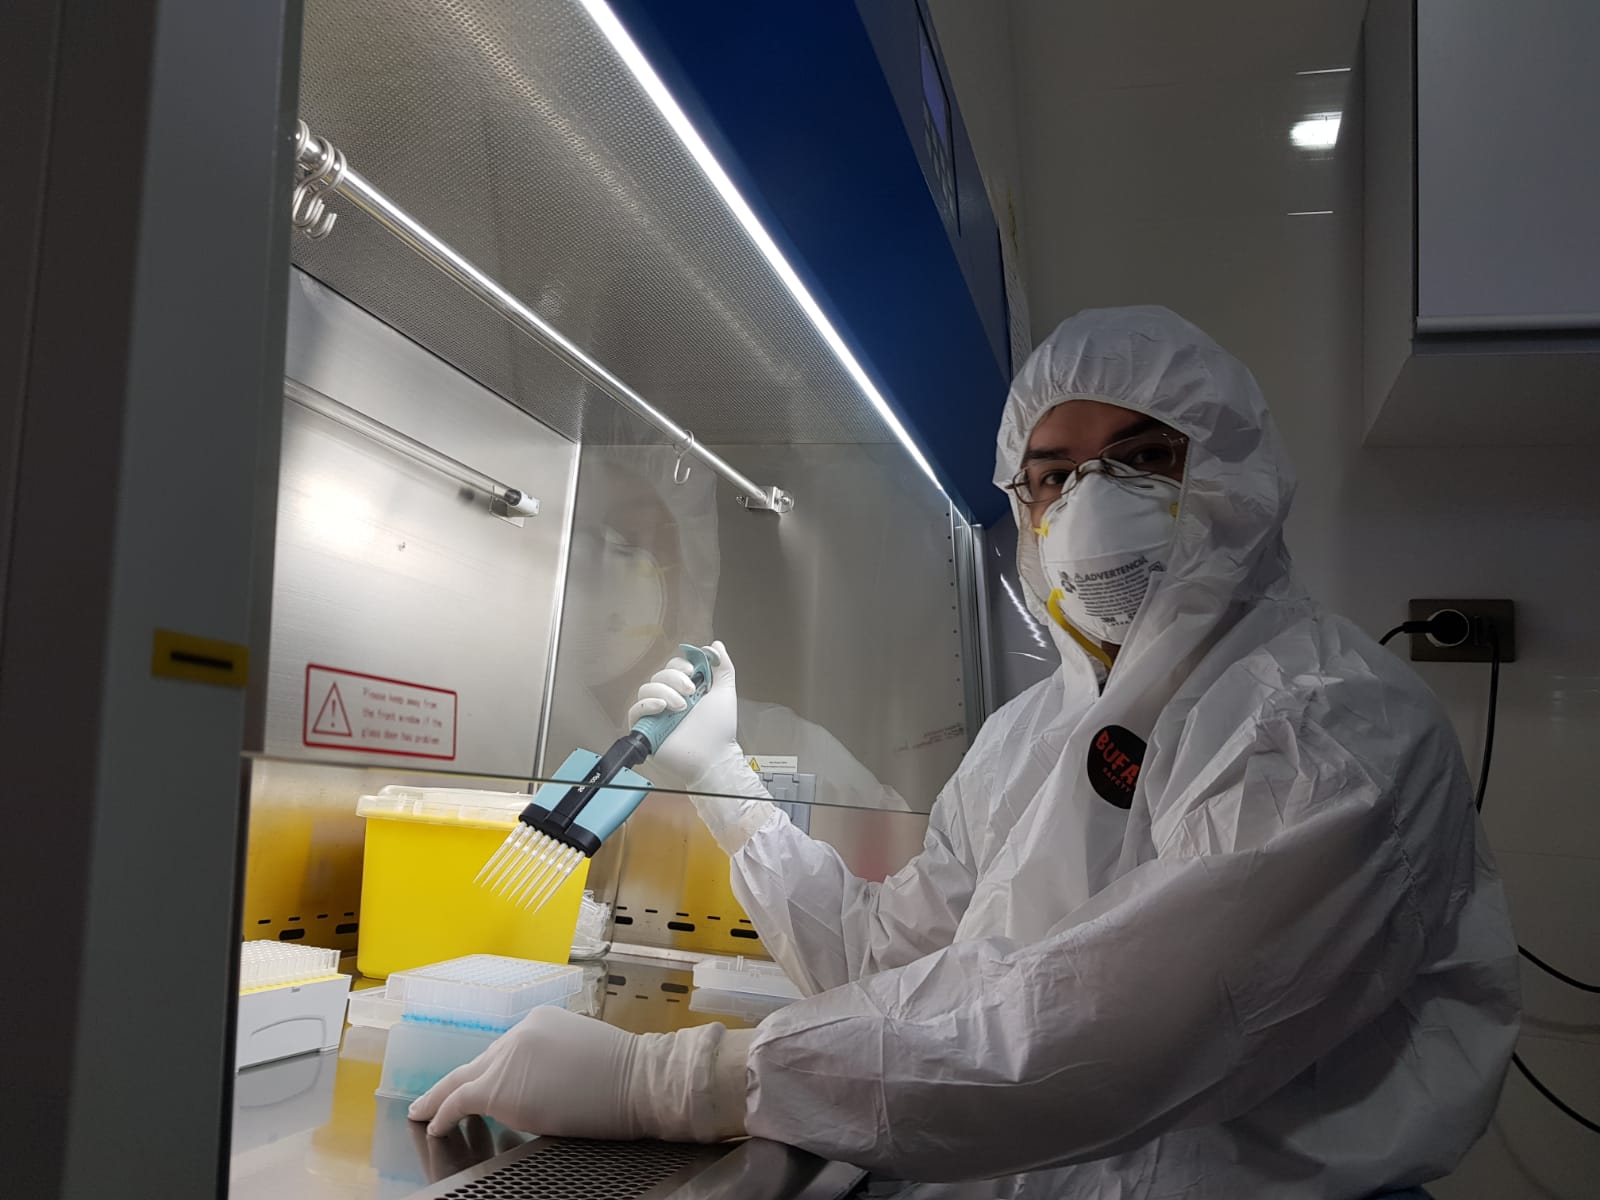 Eduardo Santander in full PPE testing Covid samples in a laboratory